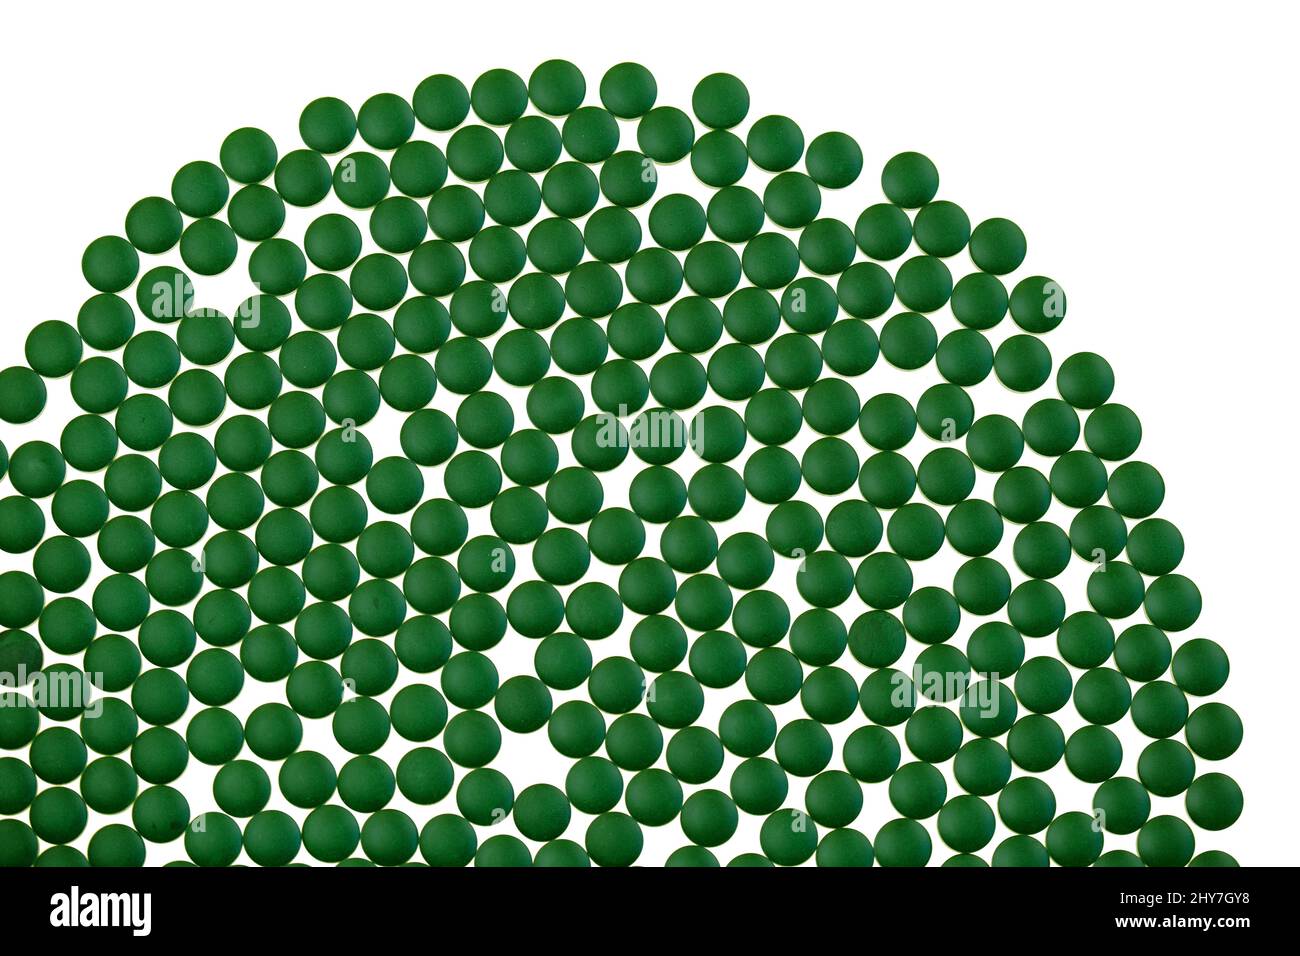 Chlorella Algen grüne Tabletten auf weißen background.seaweed Nahrungsergänzungsmittel. Chlorella Pulver Tabletten.Spirulina Algen. Alternative Medizin und Stockfoto